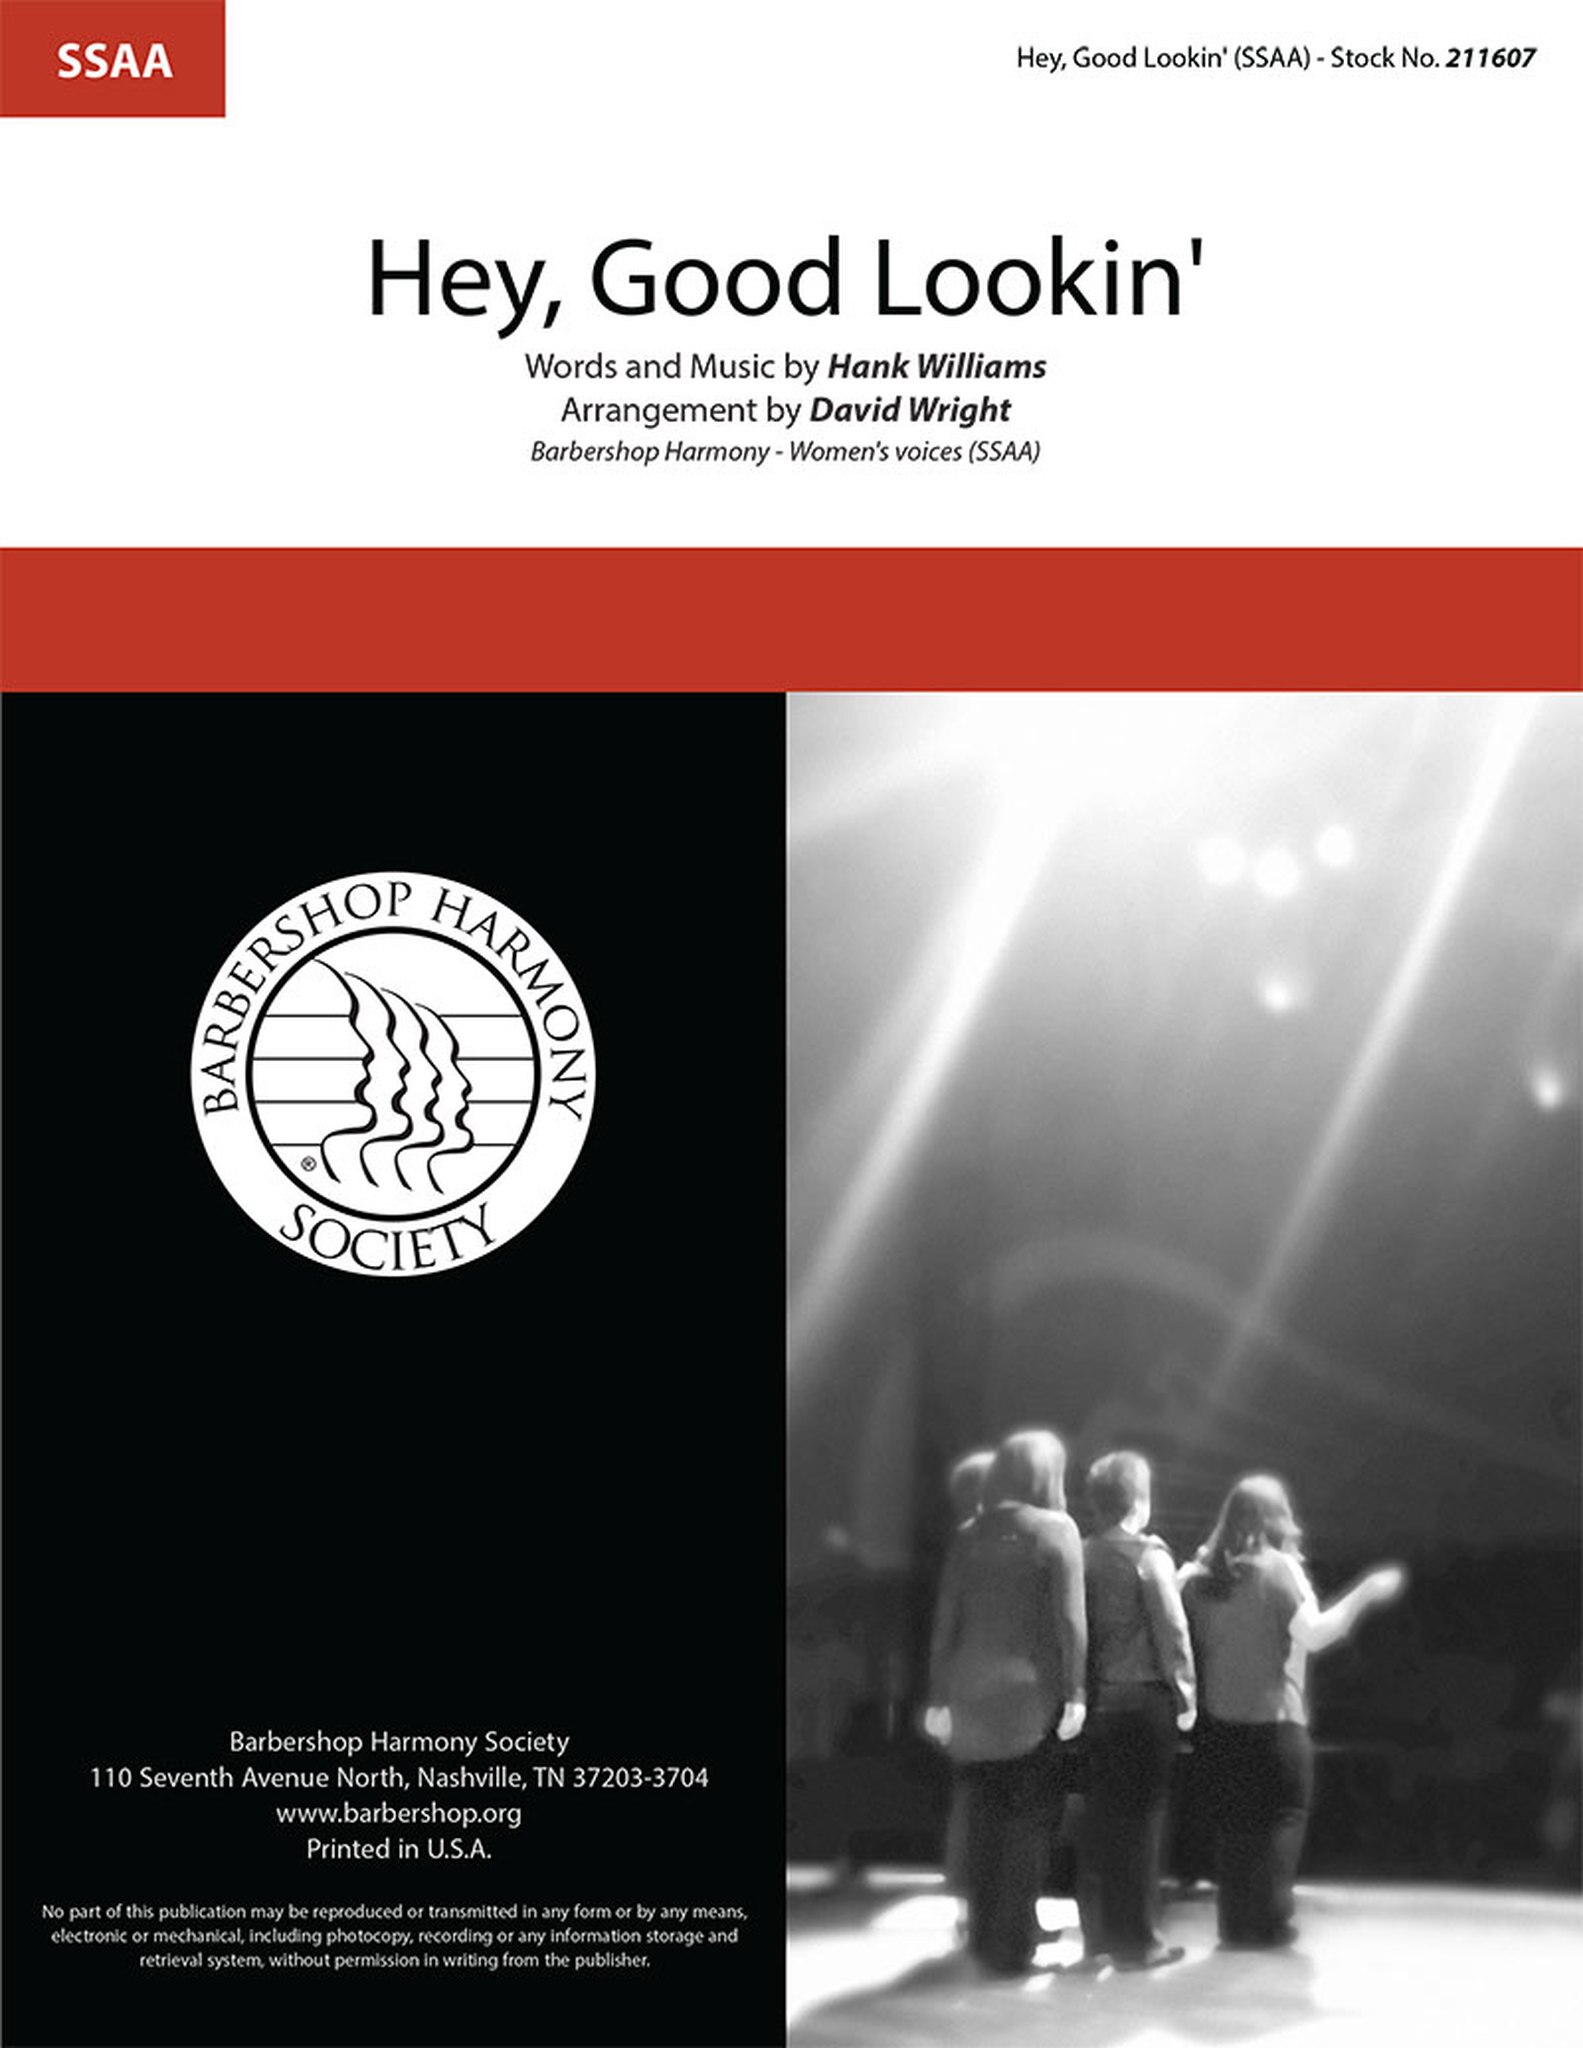 Hey, Good Lookin' : SSAA : David Wright : Hank Williams : 1 CD : 211607